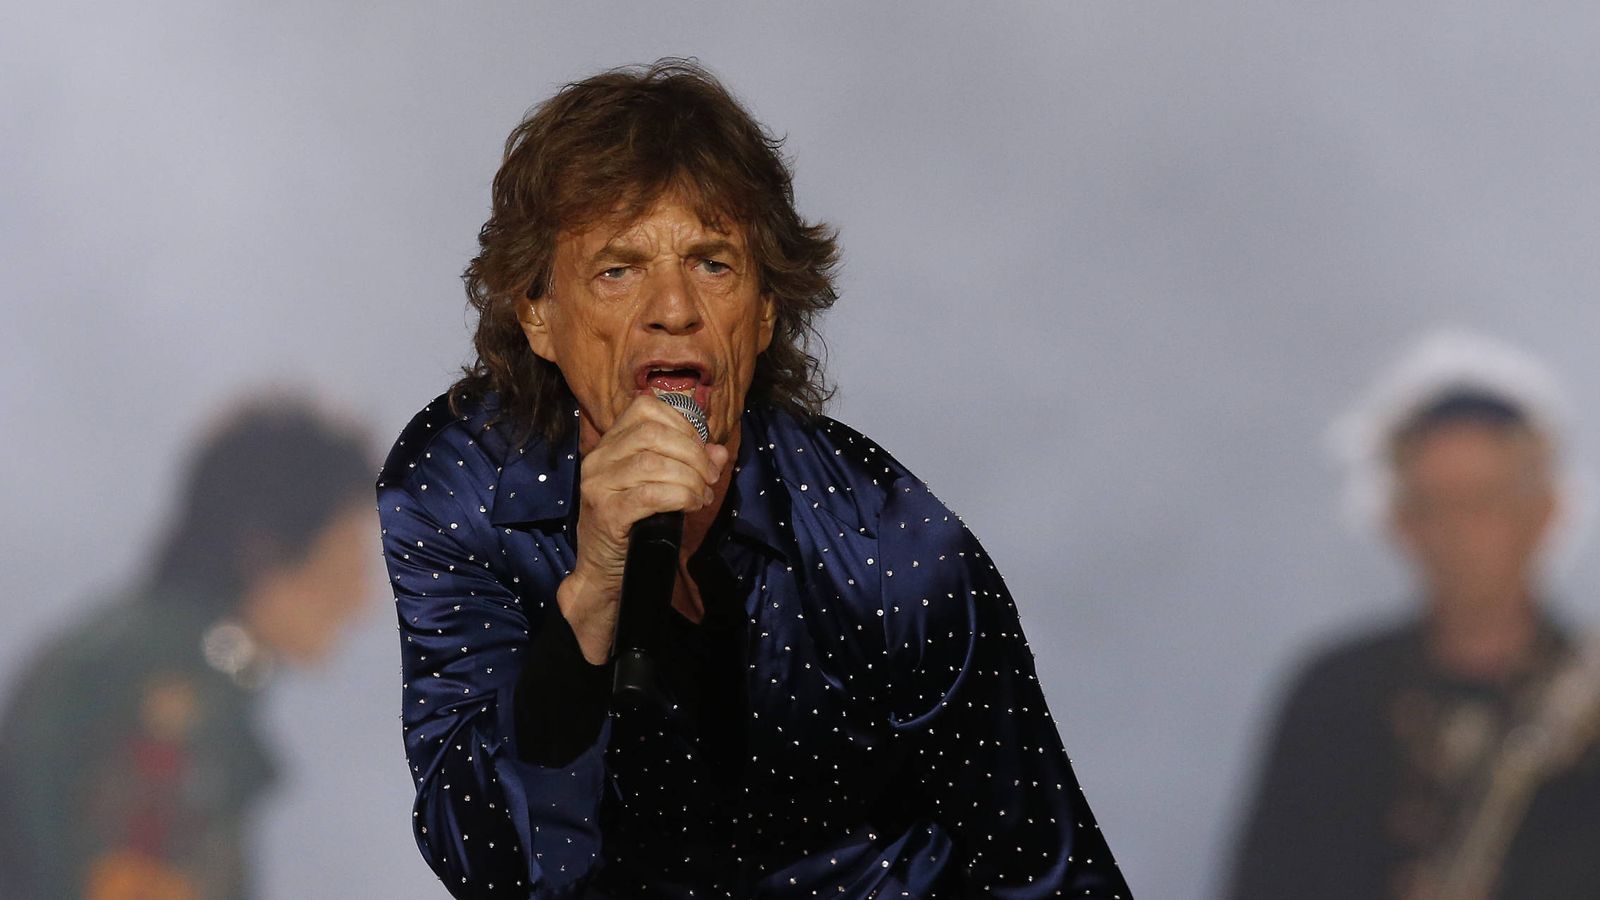 Foto: El cantante Mick Jagger en una imagen de archivo. (Gtres)